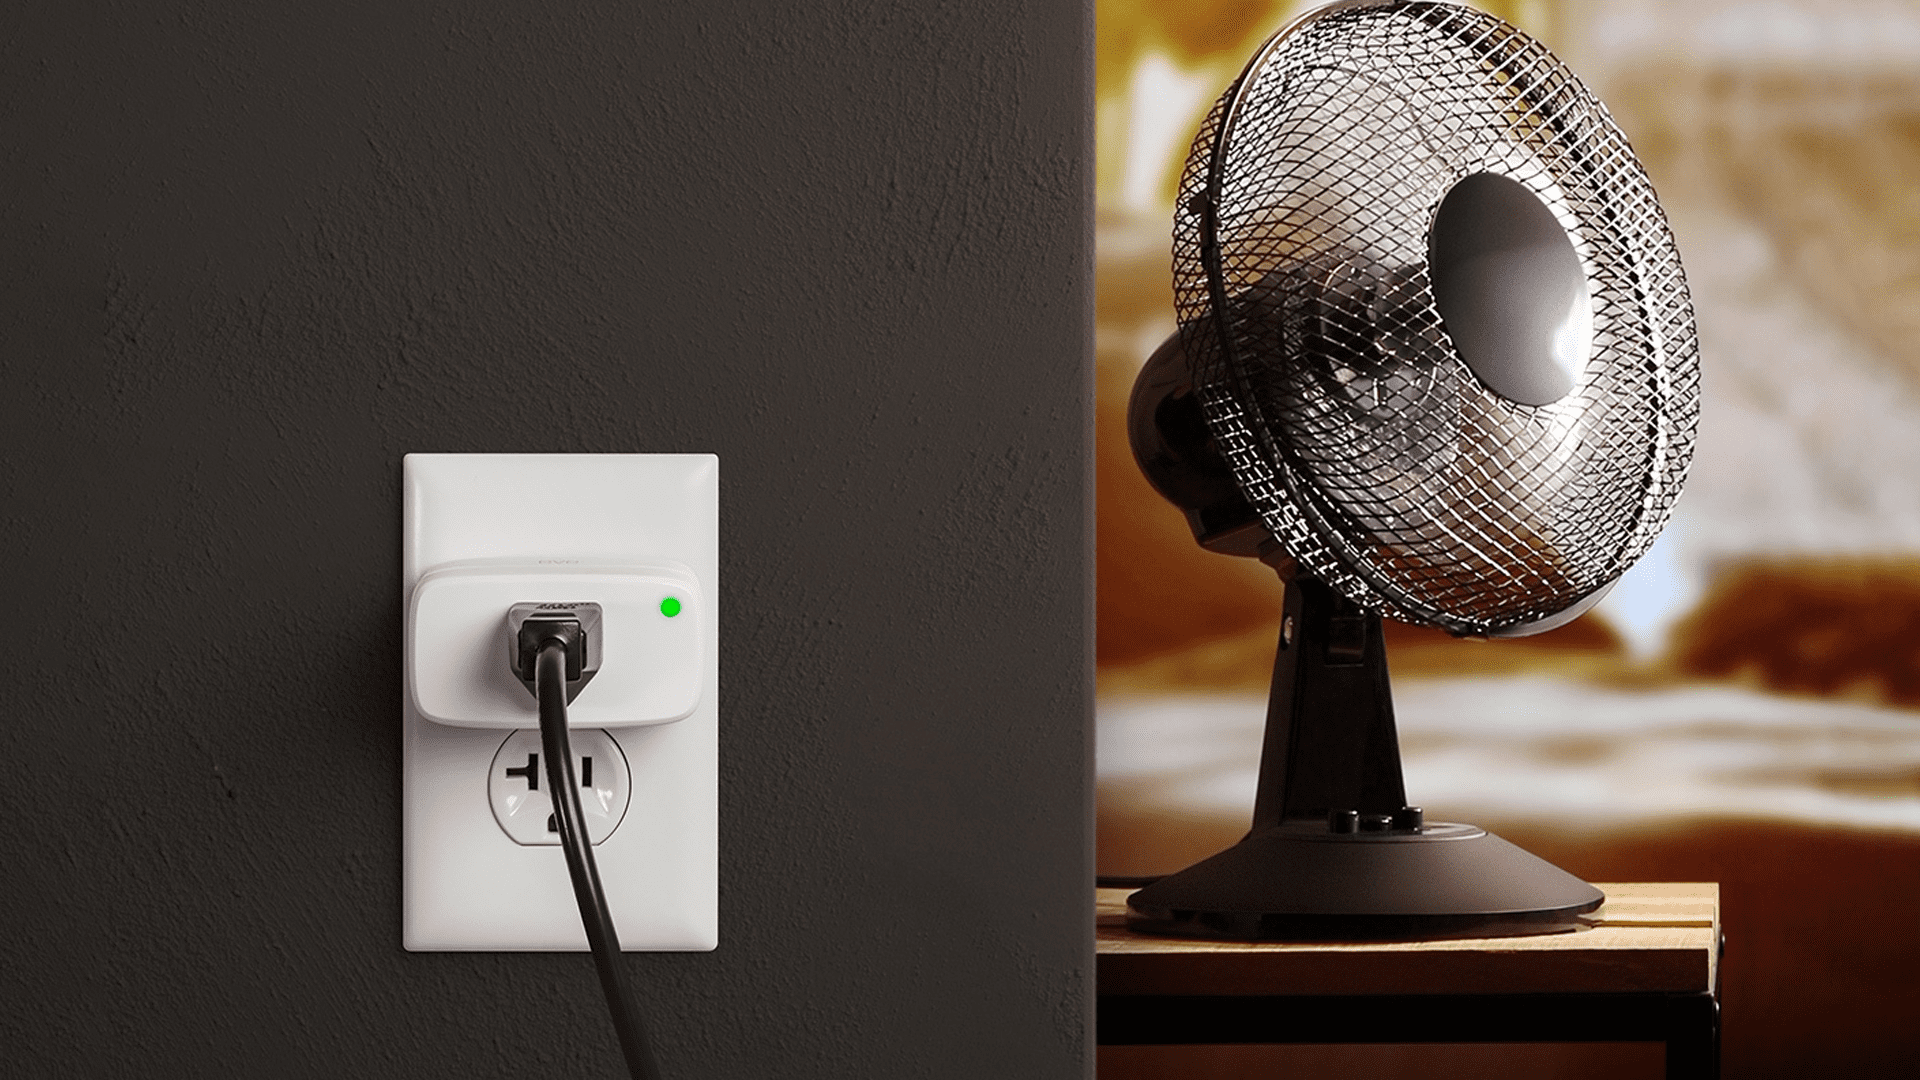 Theme använder Eves nya HomeKit smarta plugg för att beställa smart hem snabbare